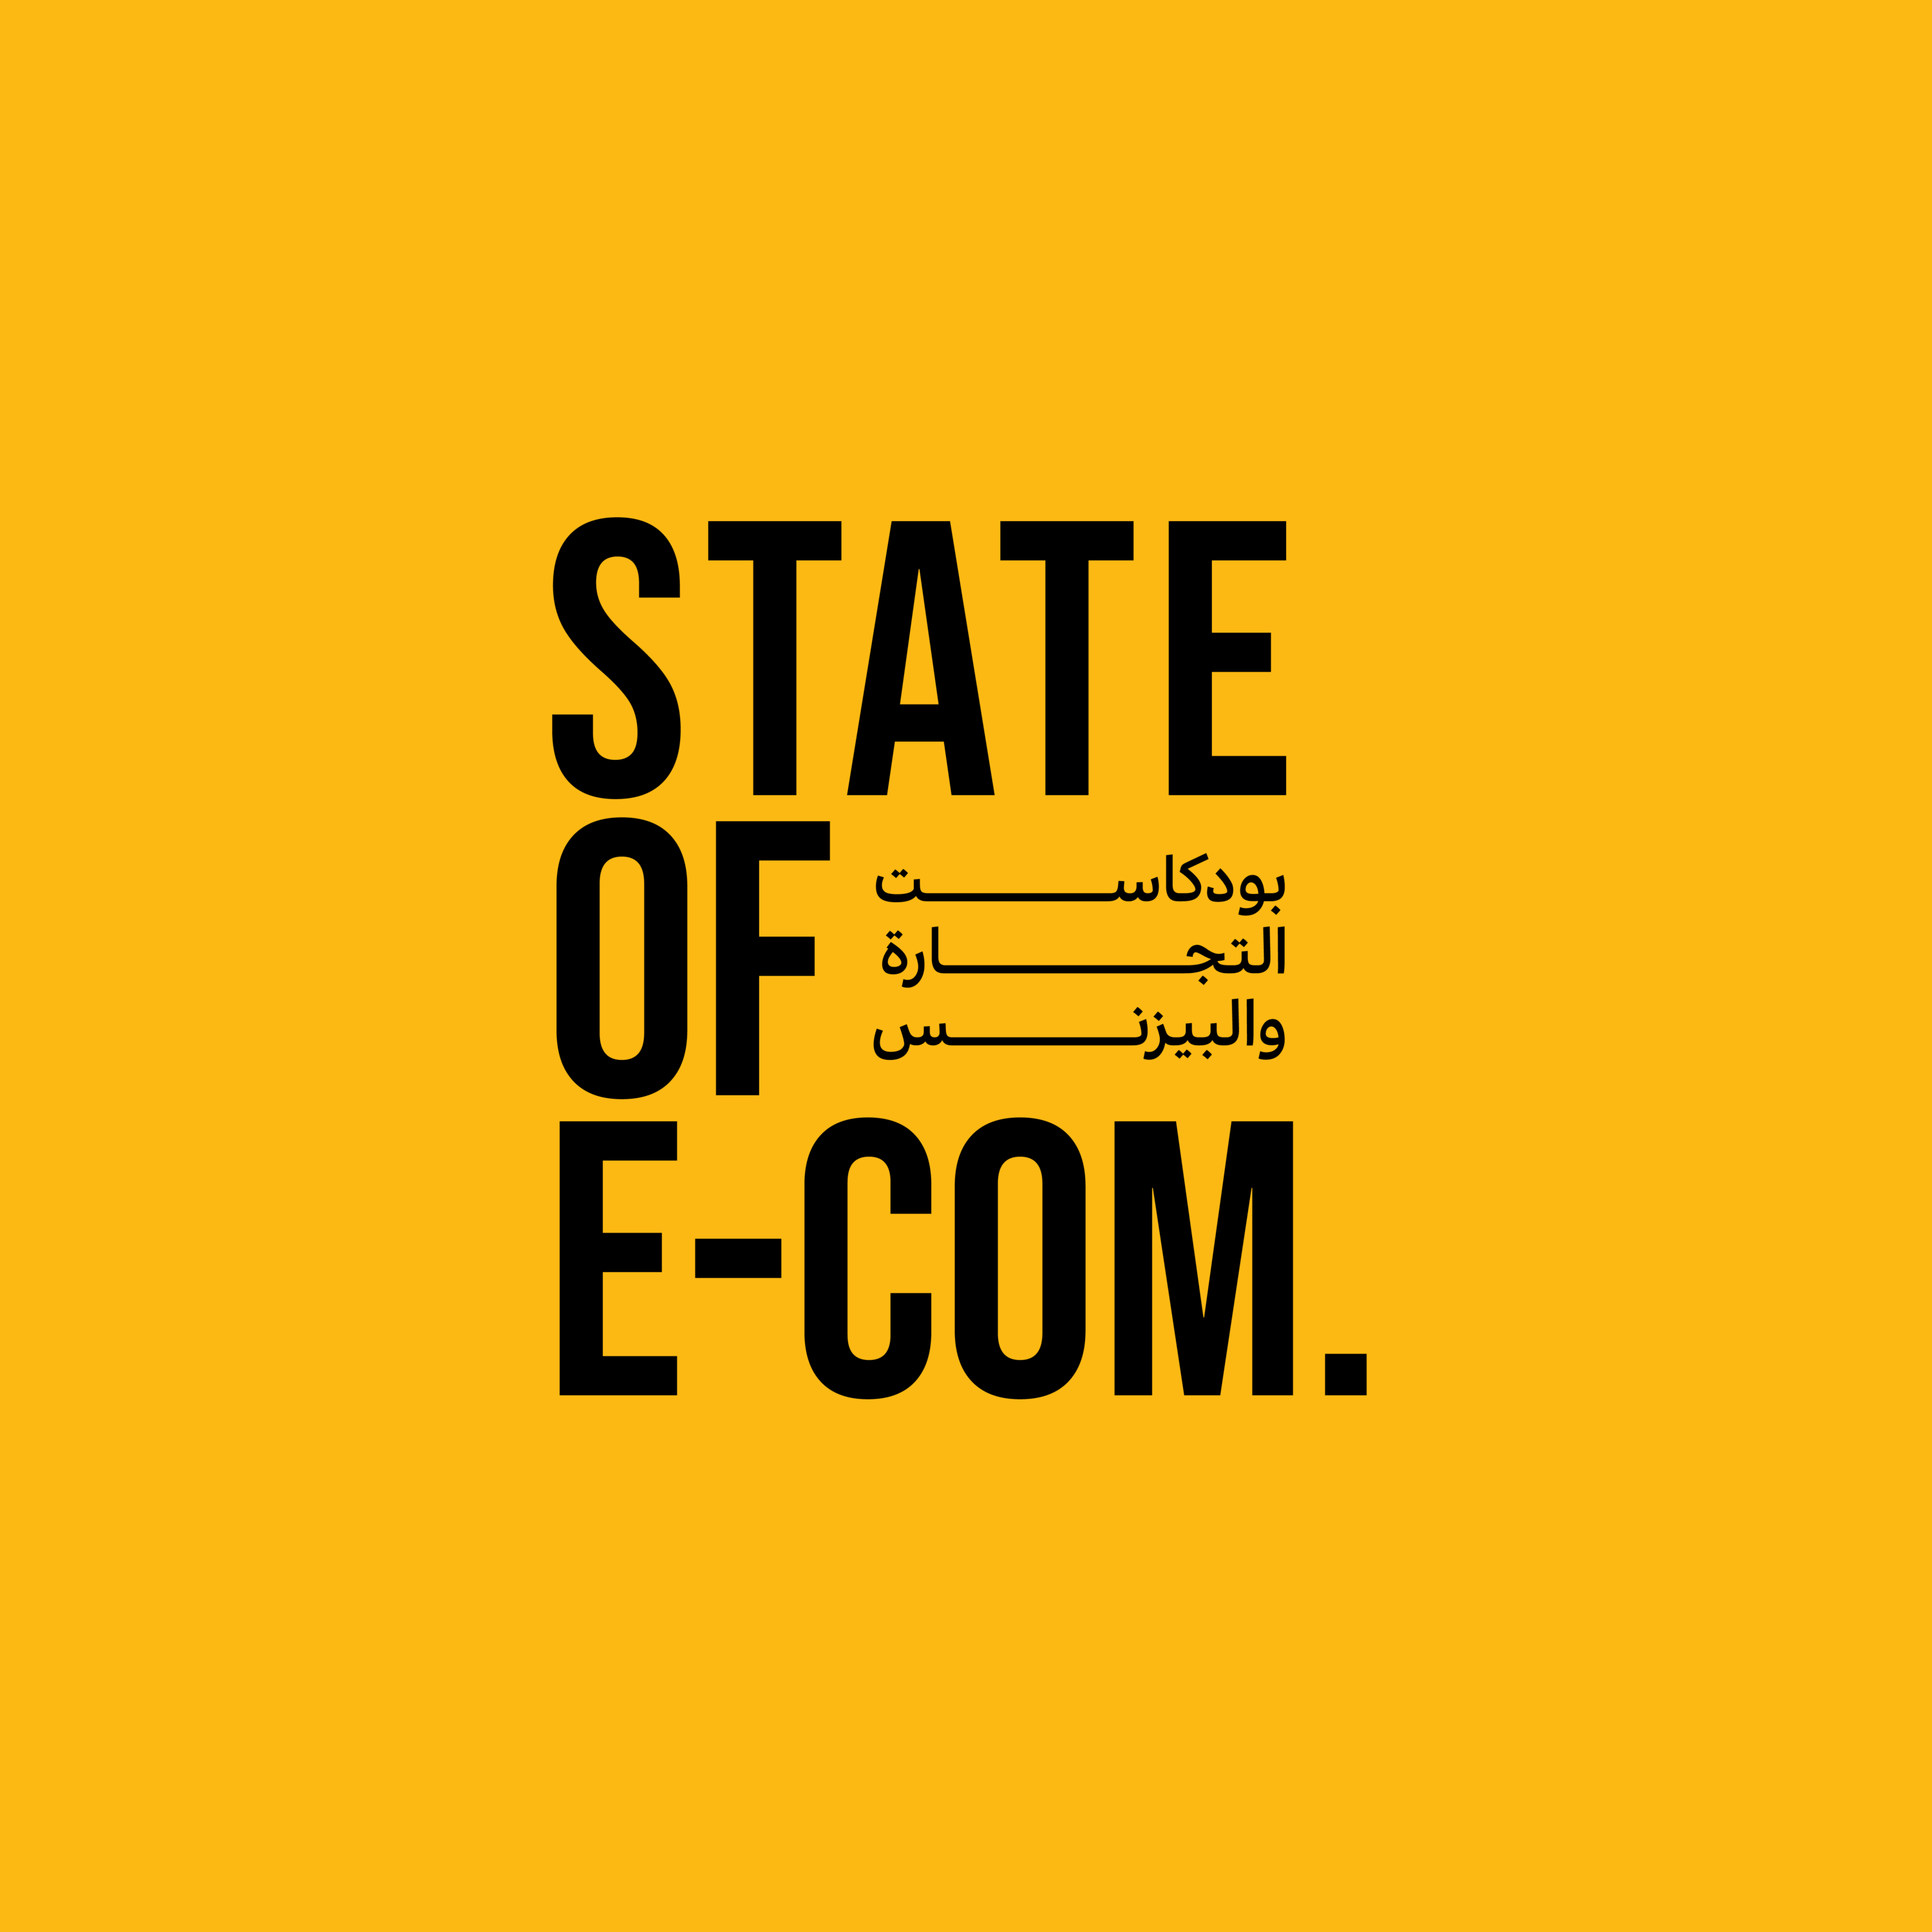 بودكاست عربي خاص بالتجارة الإلكترونية والبيزنس والتسويق لمساعدة أصحاب الأعمال على قياس وفهم وتطوير مبيعاتهم أونلاين.